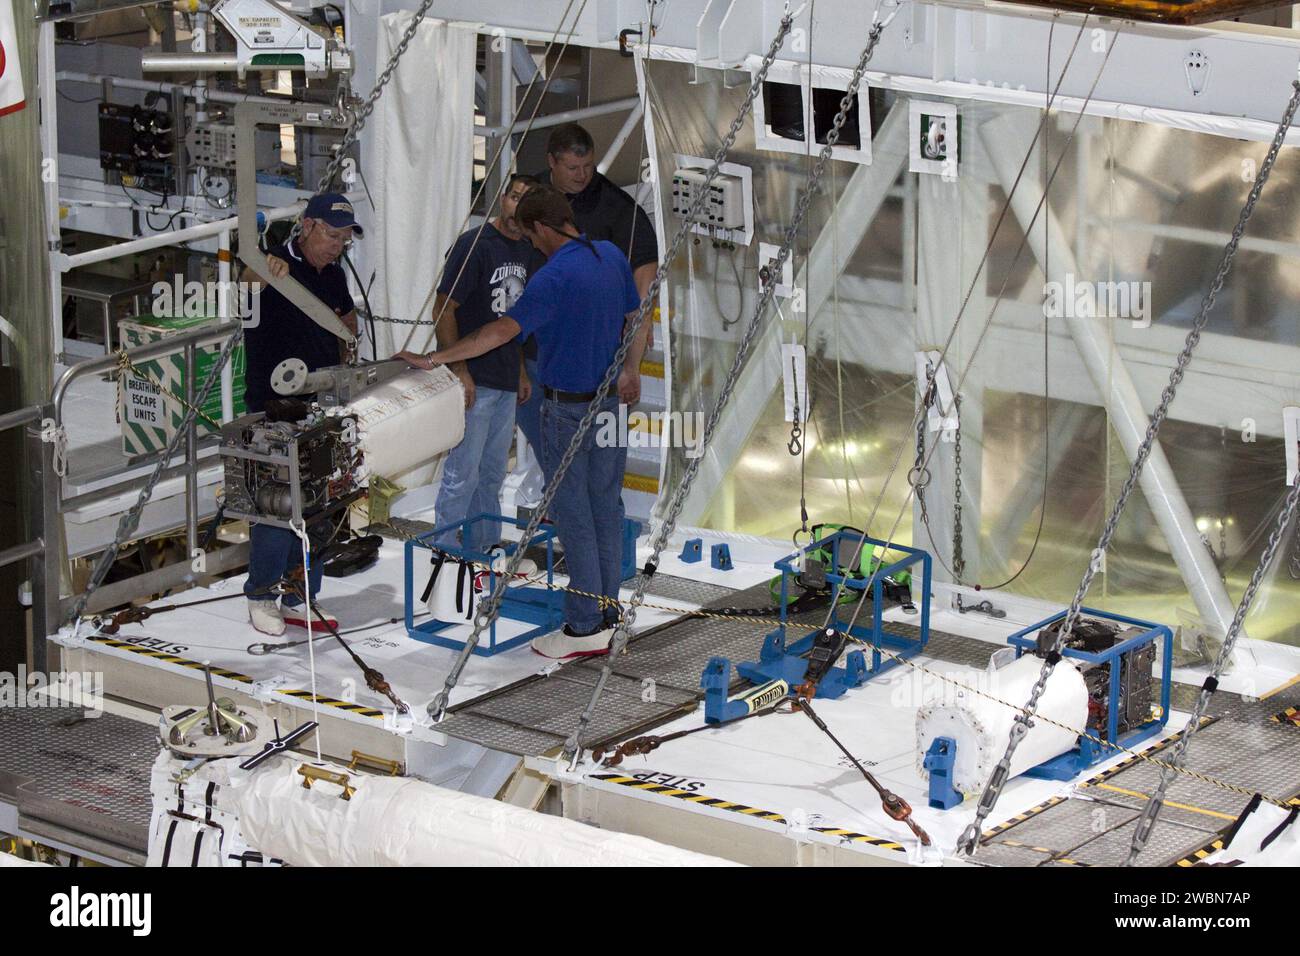 CAPE CANAVERAL, Fla. – Innerhalb der Orbiter Processing Facility-2 im Kennedy Space Center der NASA in Florida überwachen Techniker den Fortschritt, während ein Spezialkran eine der drei Brennstoffzellen aus dem Space Shuttle Atlantis’ hebt, um sie auf einer speziellen Plattform zu sichern. Alle Flüssigkeiten werden aus den Brennstoffzellen abgelassen. Die Wasserstoff- und Sauerstoff-Dewars, die den Brennstoffzellen Reaktanten zuführen, verbleiben im mittleren Körper von Atlantis und werden mit inerten Gasen gespült und abgelassen. Die Arbeit ist Teil der Übergangs- und Pensionierung des Shuttles Atlantis. Der Orbiter wird auf die Di vorbereitet Stockfoto